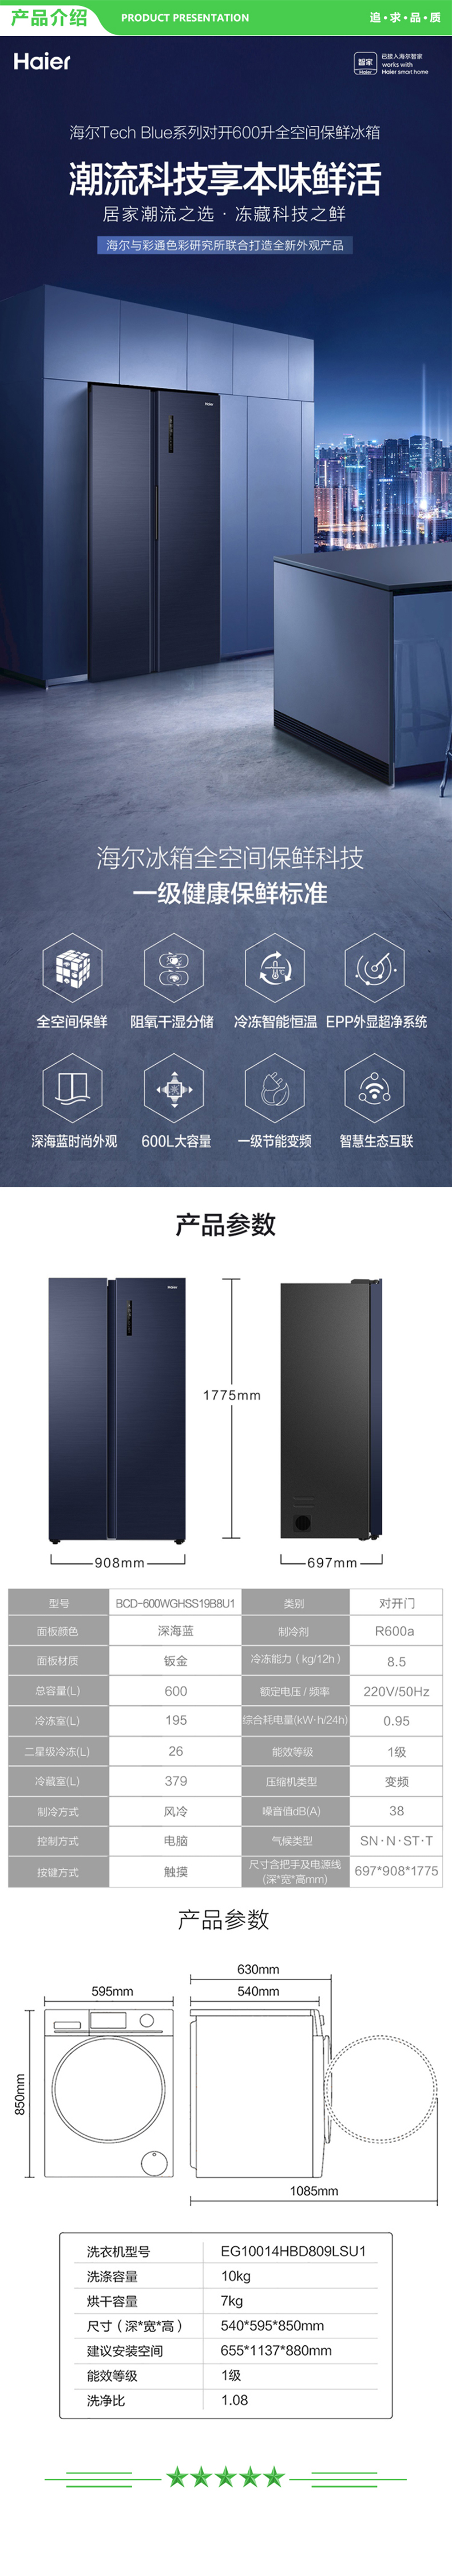 海尔 Haier BCD-600WGHSS19B8U1+EG10014HBD809LSU1 对开门家用冰箱+10KG超薄滚筒洗衣机 .jpg